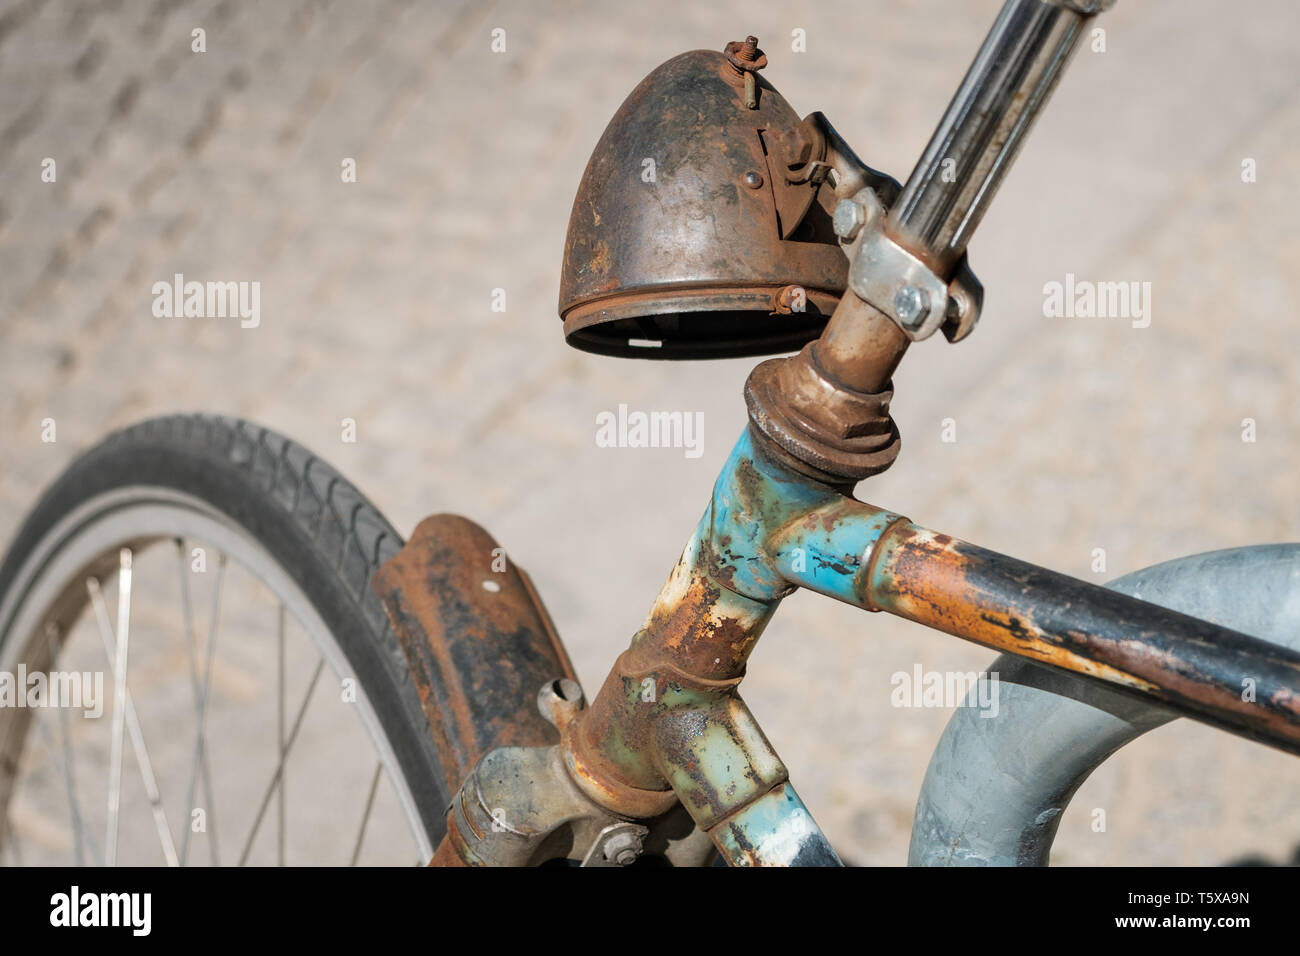 Verwittert, alten verrosteten Fahrrad Scheinwerfer - verrostete Fahrrad - Stockfoto